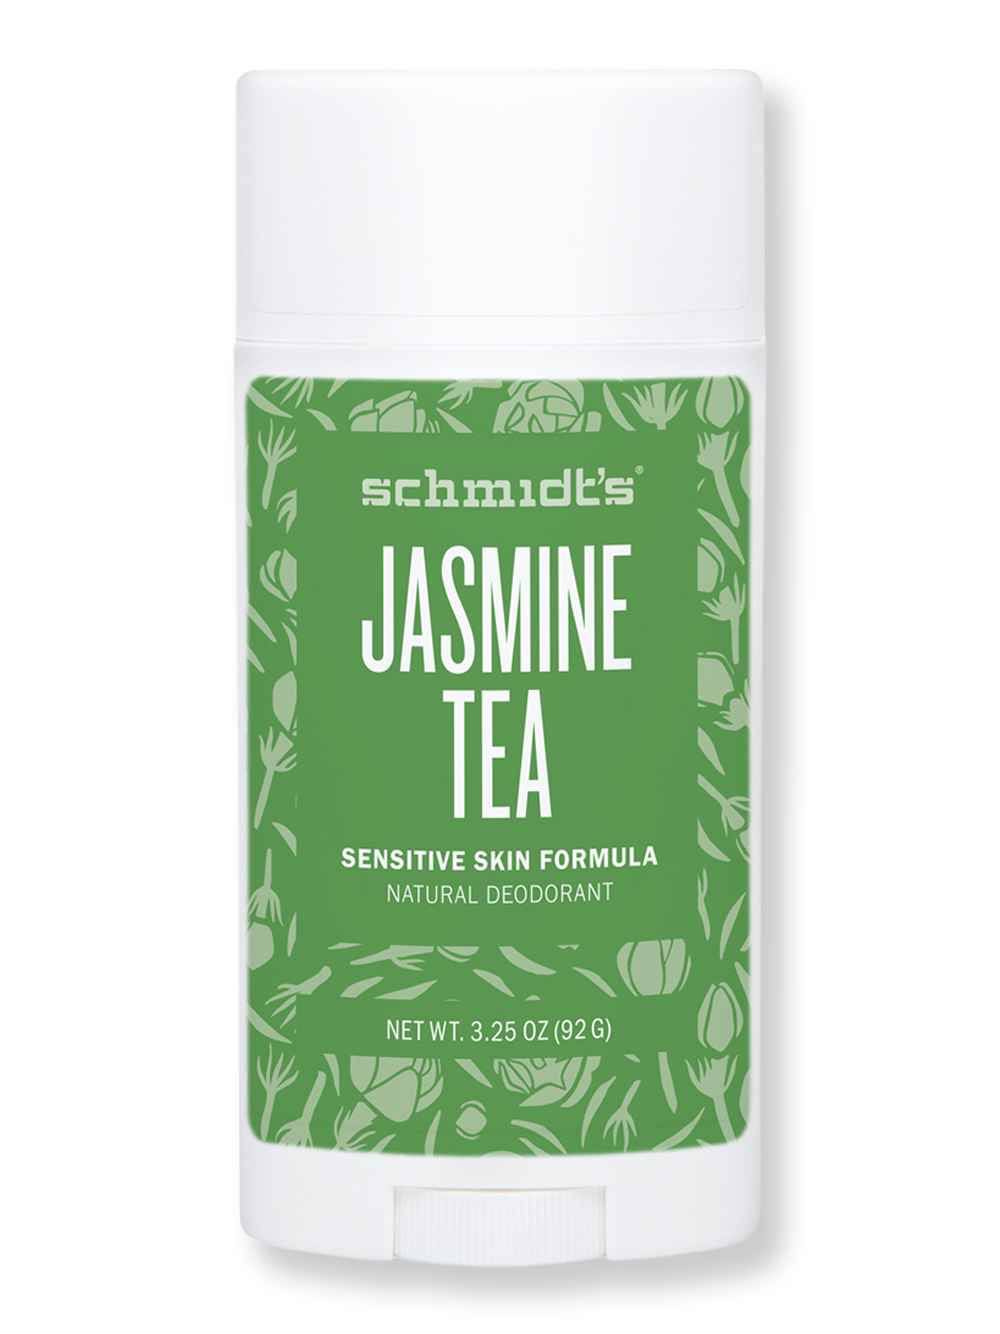 Schmidt's Sensitive Skin Formula Natural Deodorant - Jasmine Tea